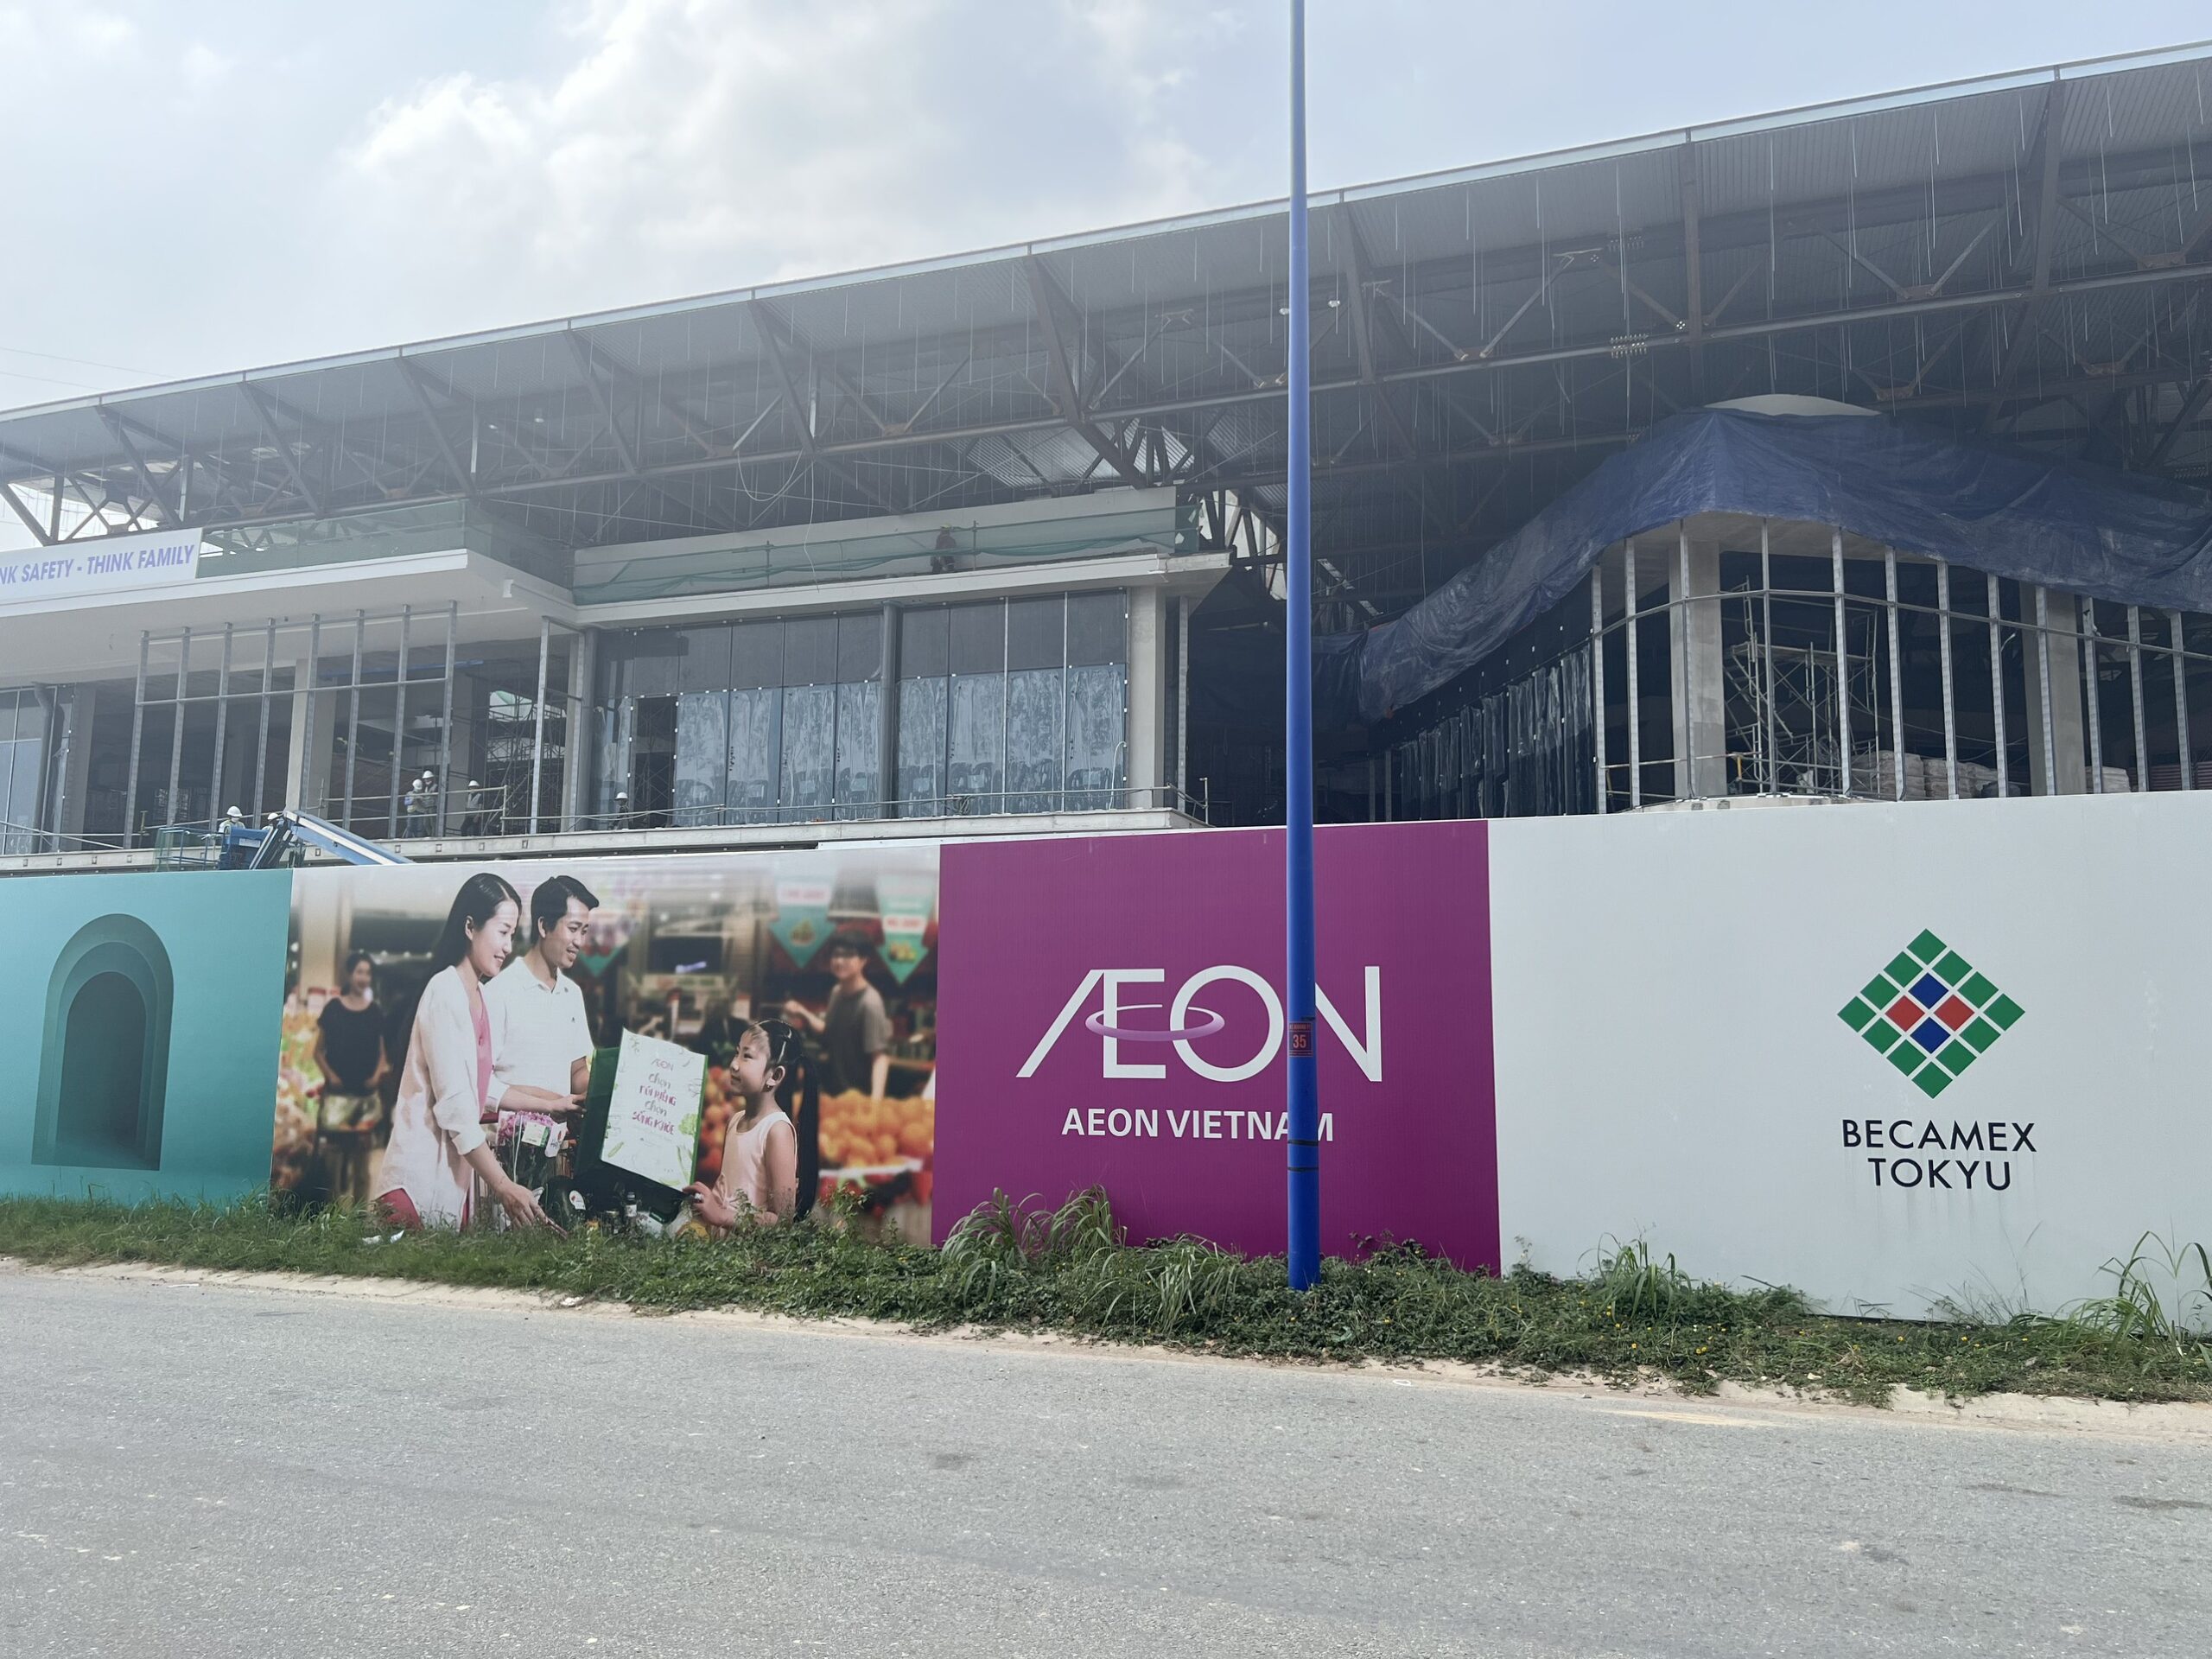 Aeon Mall Thành phố mới Bình Dương đang dần hoàn thiện